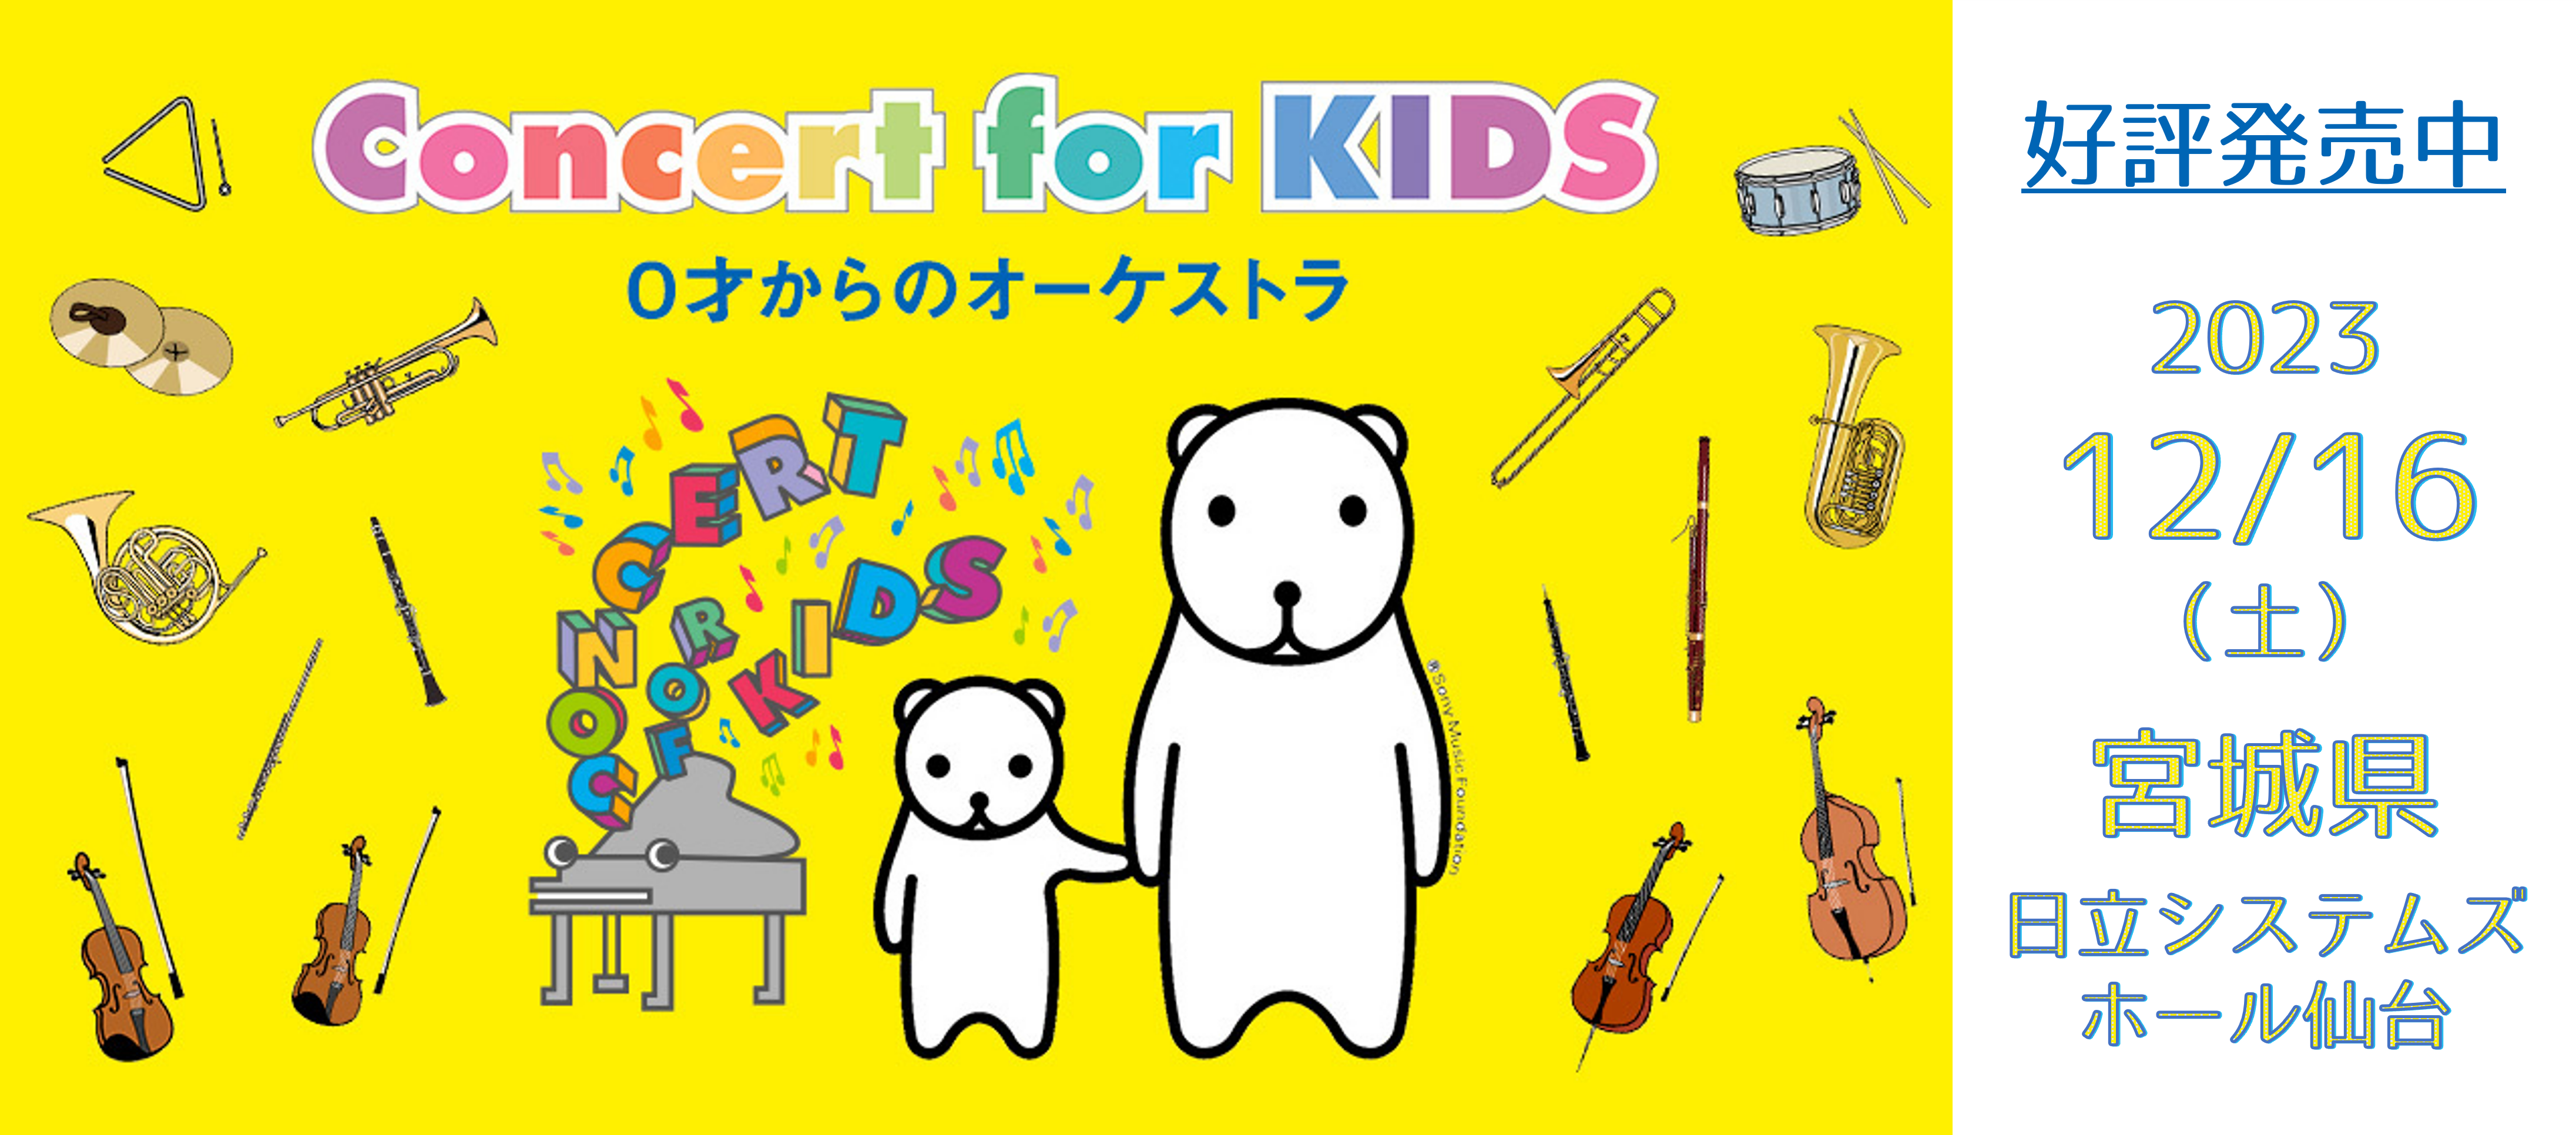 Concert for KIDS 0才からのオーケストラ